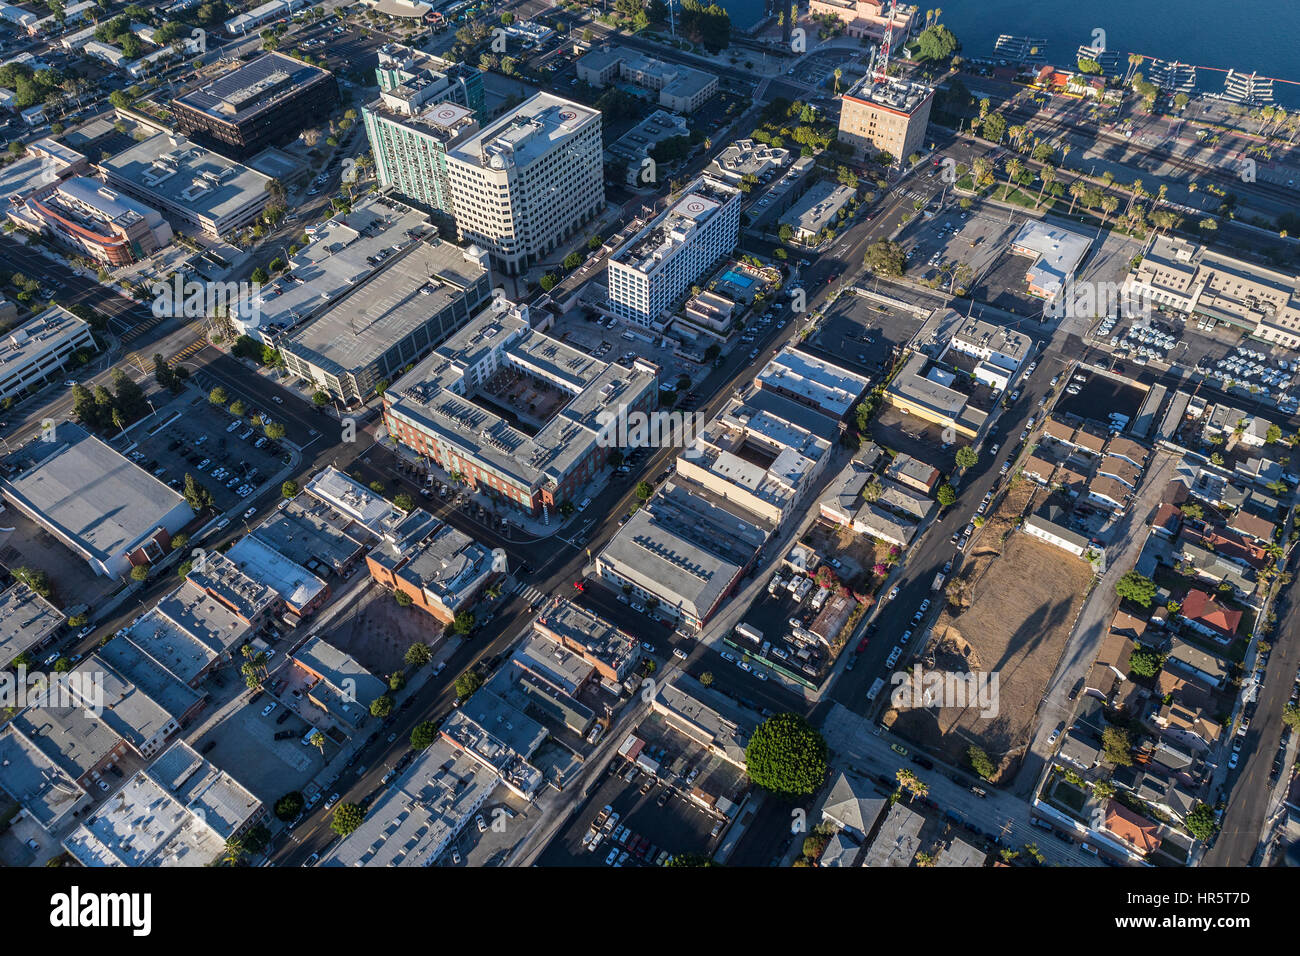 Los Angeles, California, Stati Uniti d'America - Agosto 16, 2016: Pomeriggio Vista aerea del centro cittadino di San Pedro nella città di Los Angeles. Foto Stock